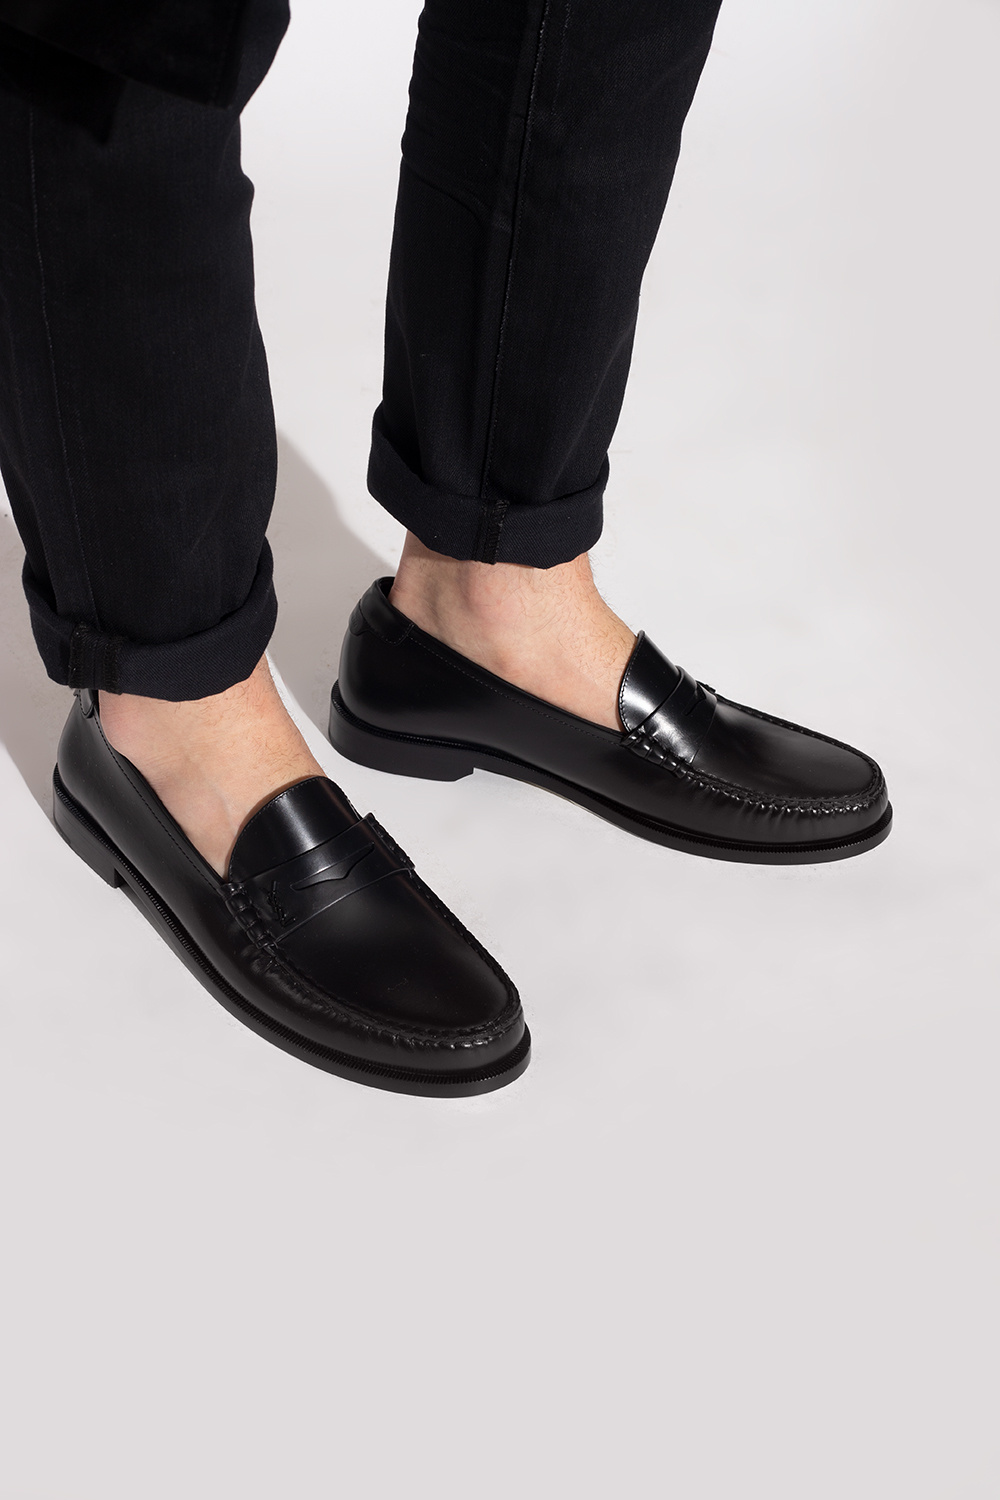 Saint Laurent Leather loafers | Men's Shoes | Vitkac